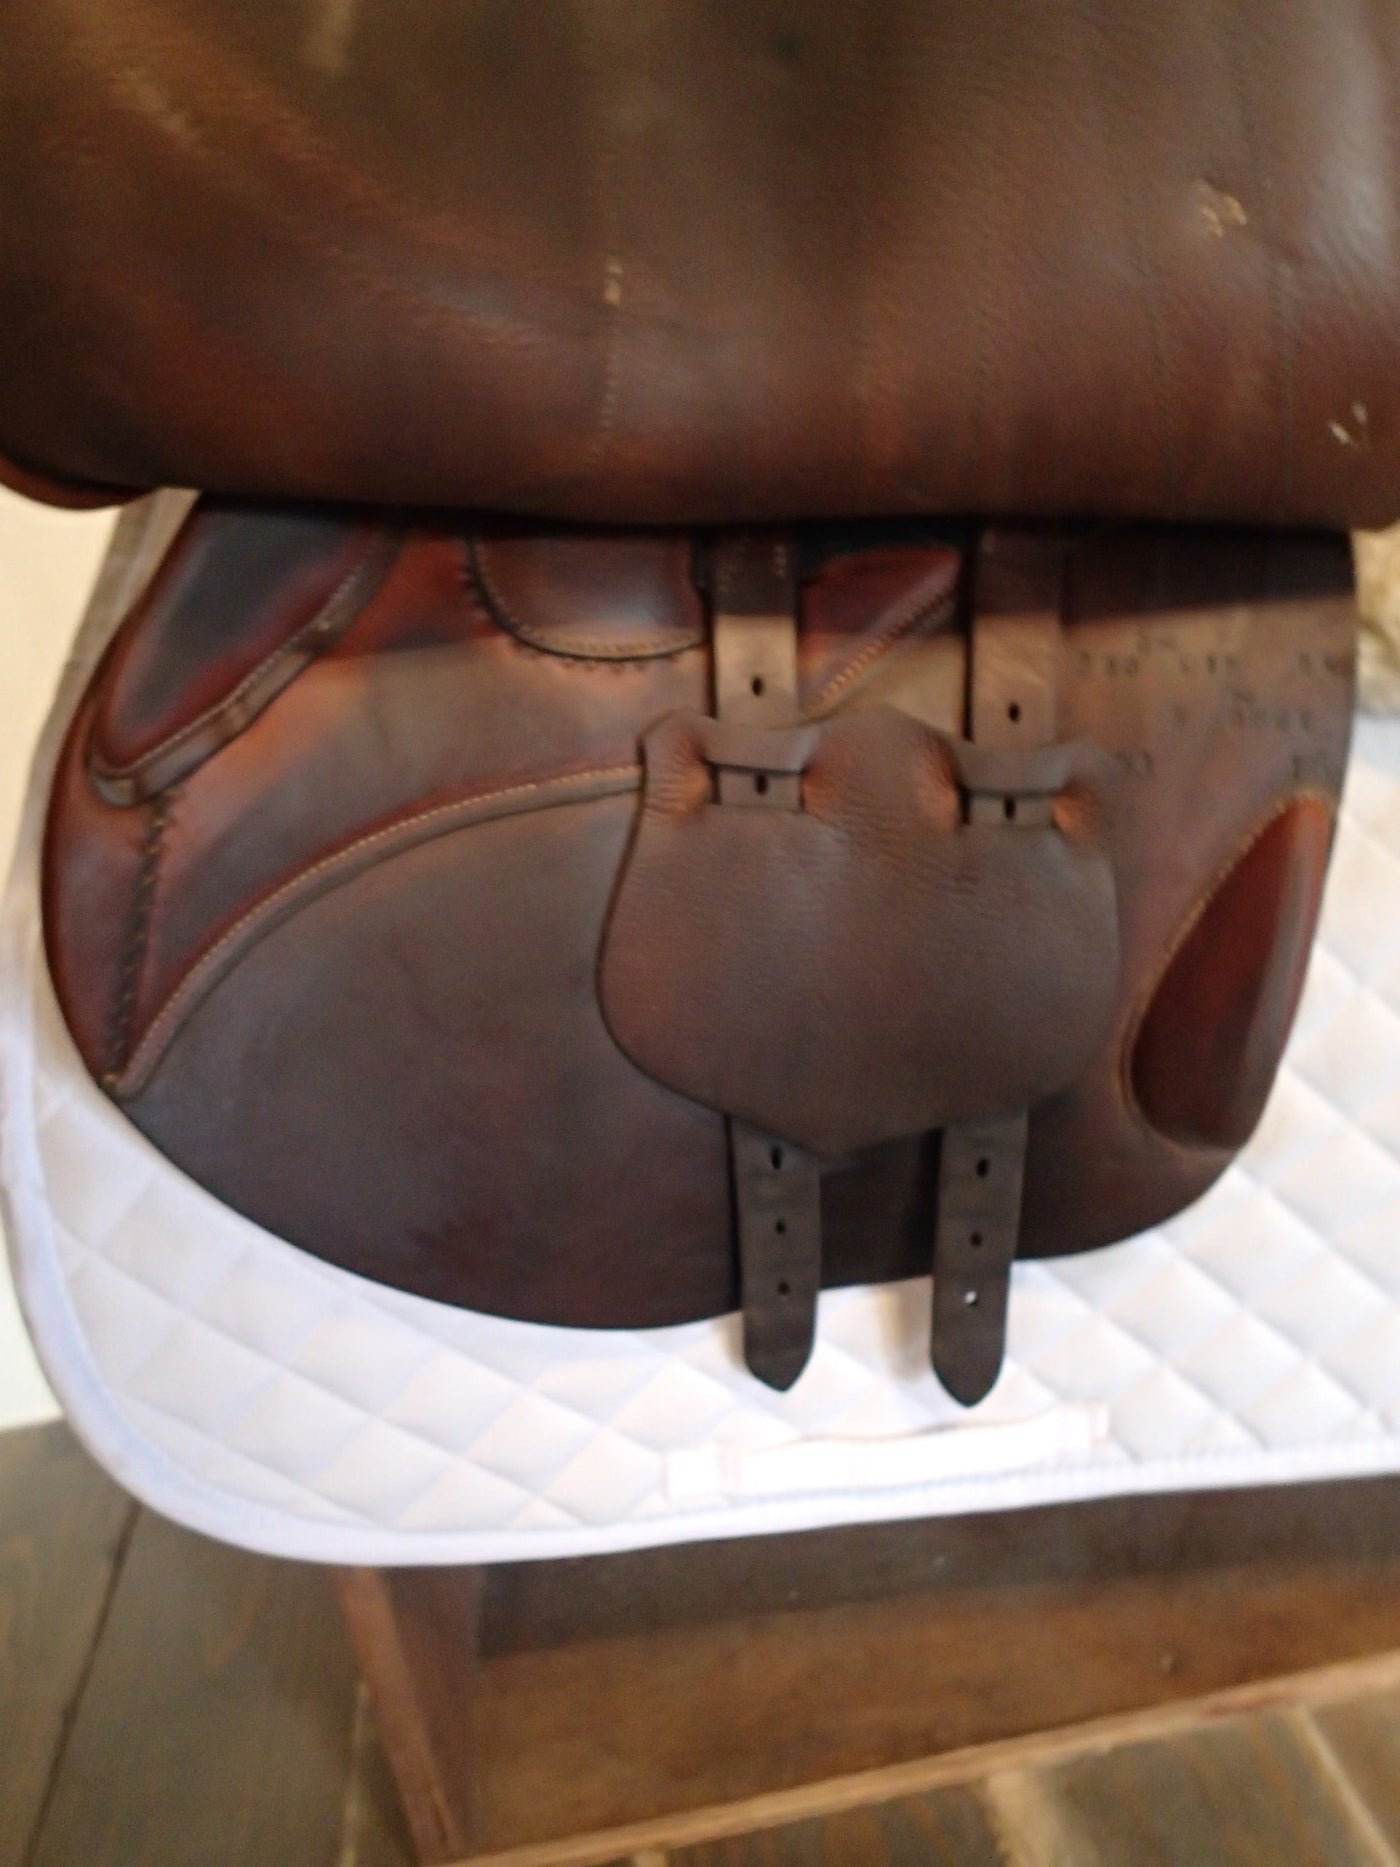 17" Butet Premium Saddle - Full Calfskin - 2016 - L Seat - 2.5C Flaps - 4.25" dot to dot